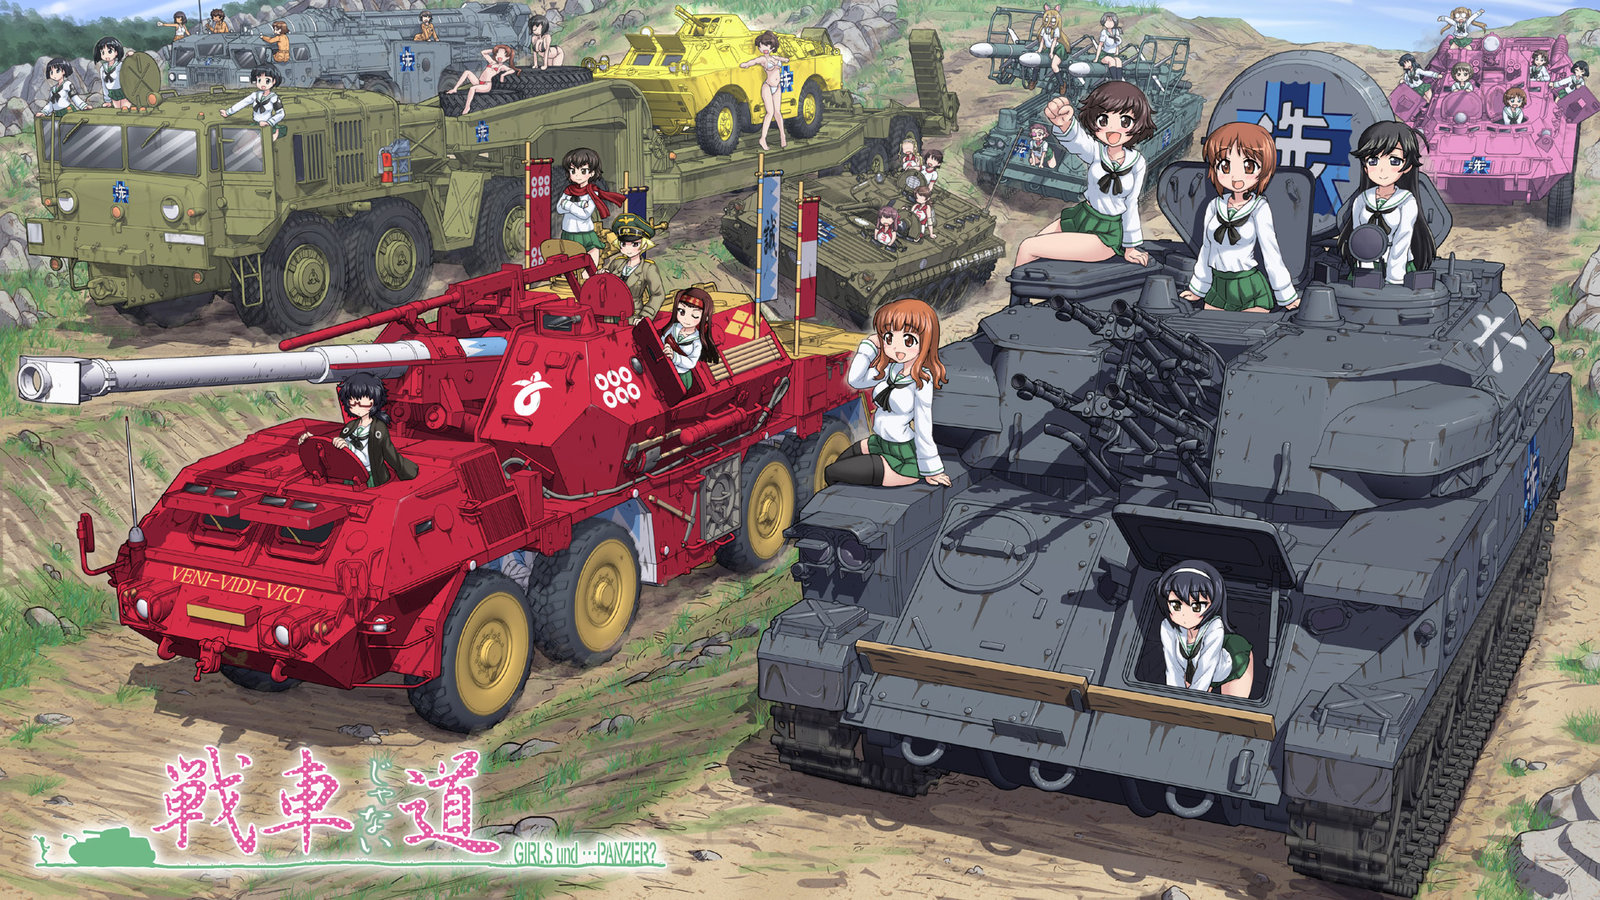 Girls Und Panzer Soviet Warsaw Pact Bsvs By Chloeeuphemissoledad On